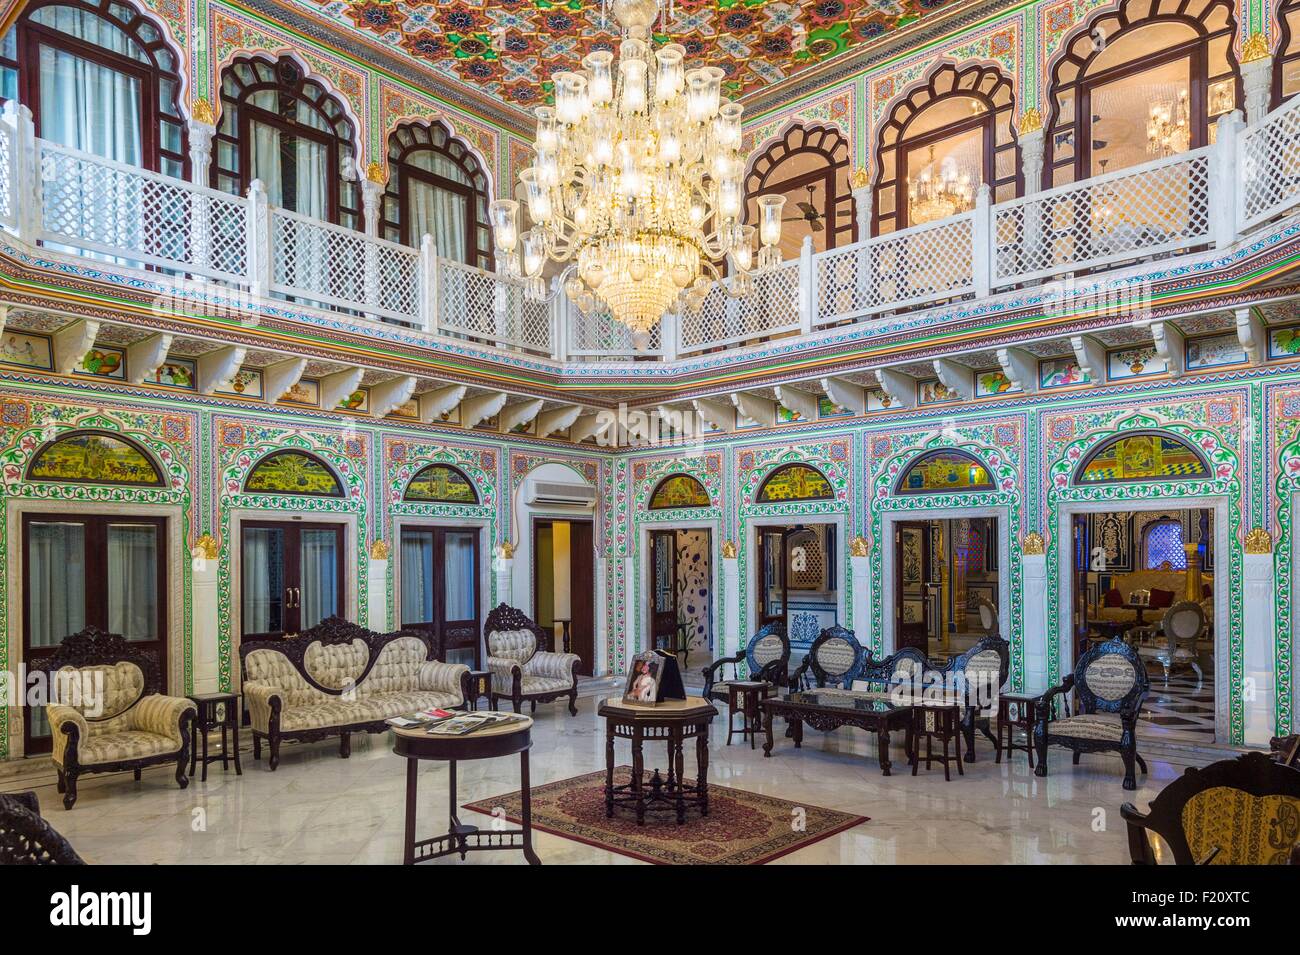 India, Rajasthan state, Shahpura, the luxury hotel Shahpura Haveli Stock Photo